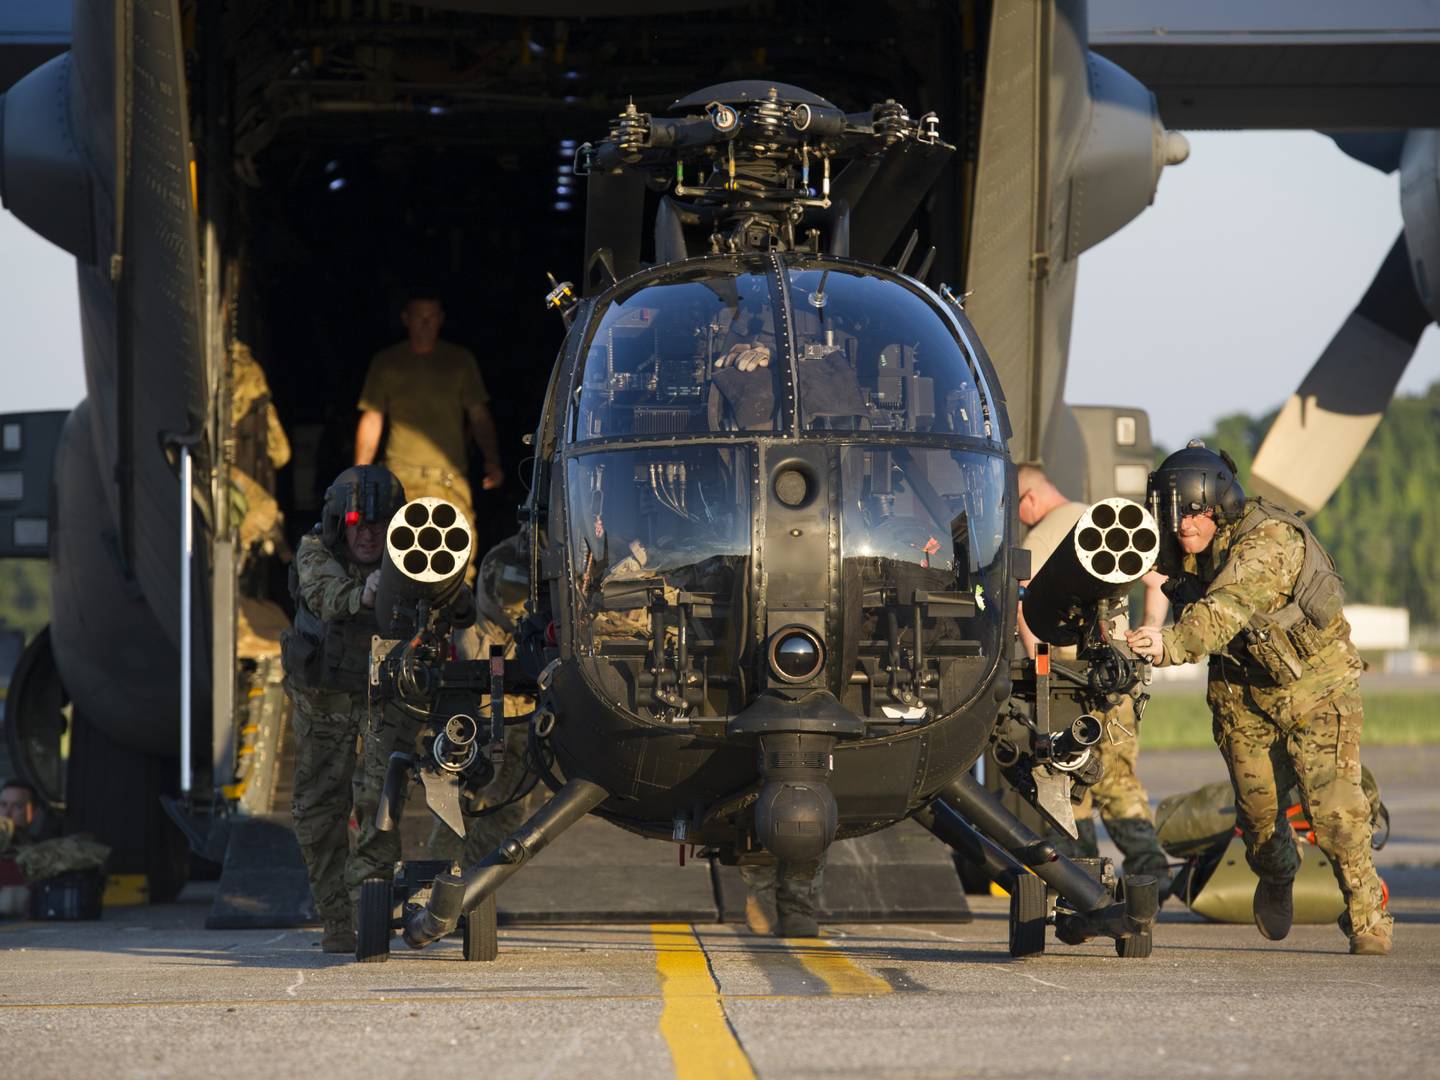 Вертолет Little Bird 160-го авиационного полка специальных операций во время учений на аэродроме Сабли, штат Теннеси